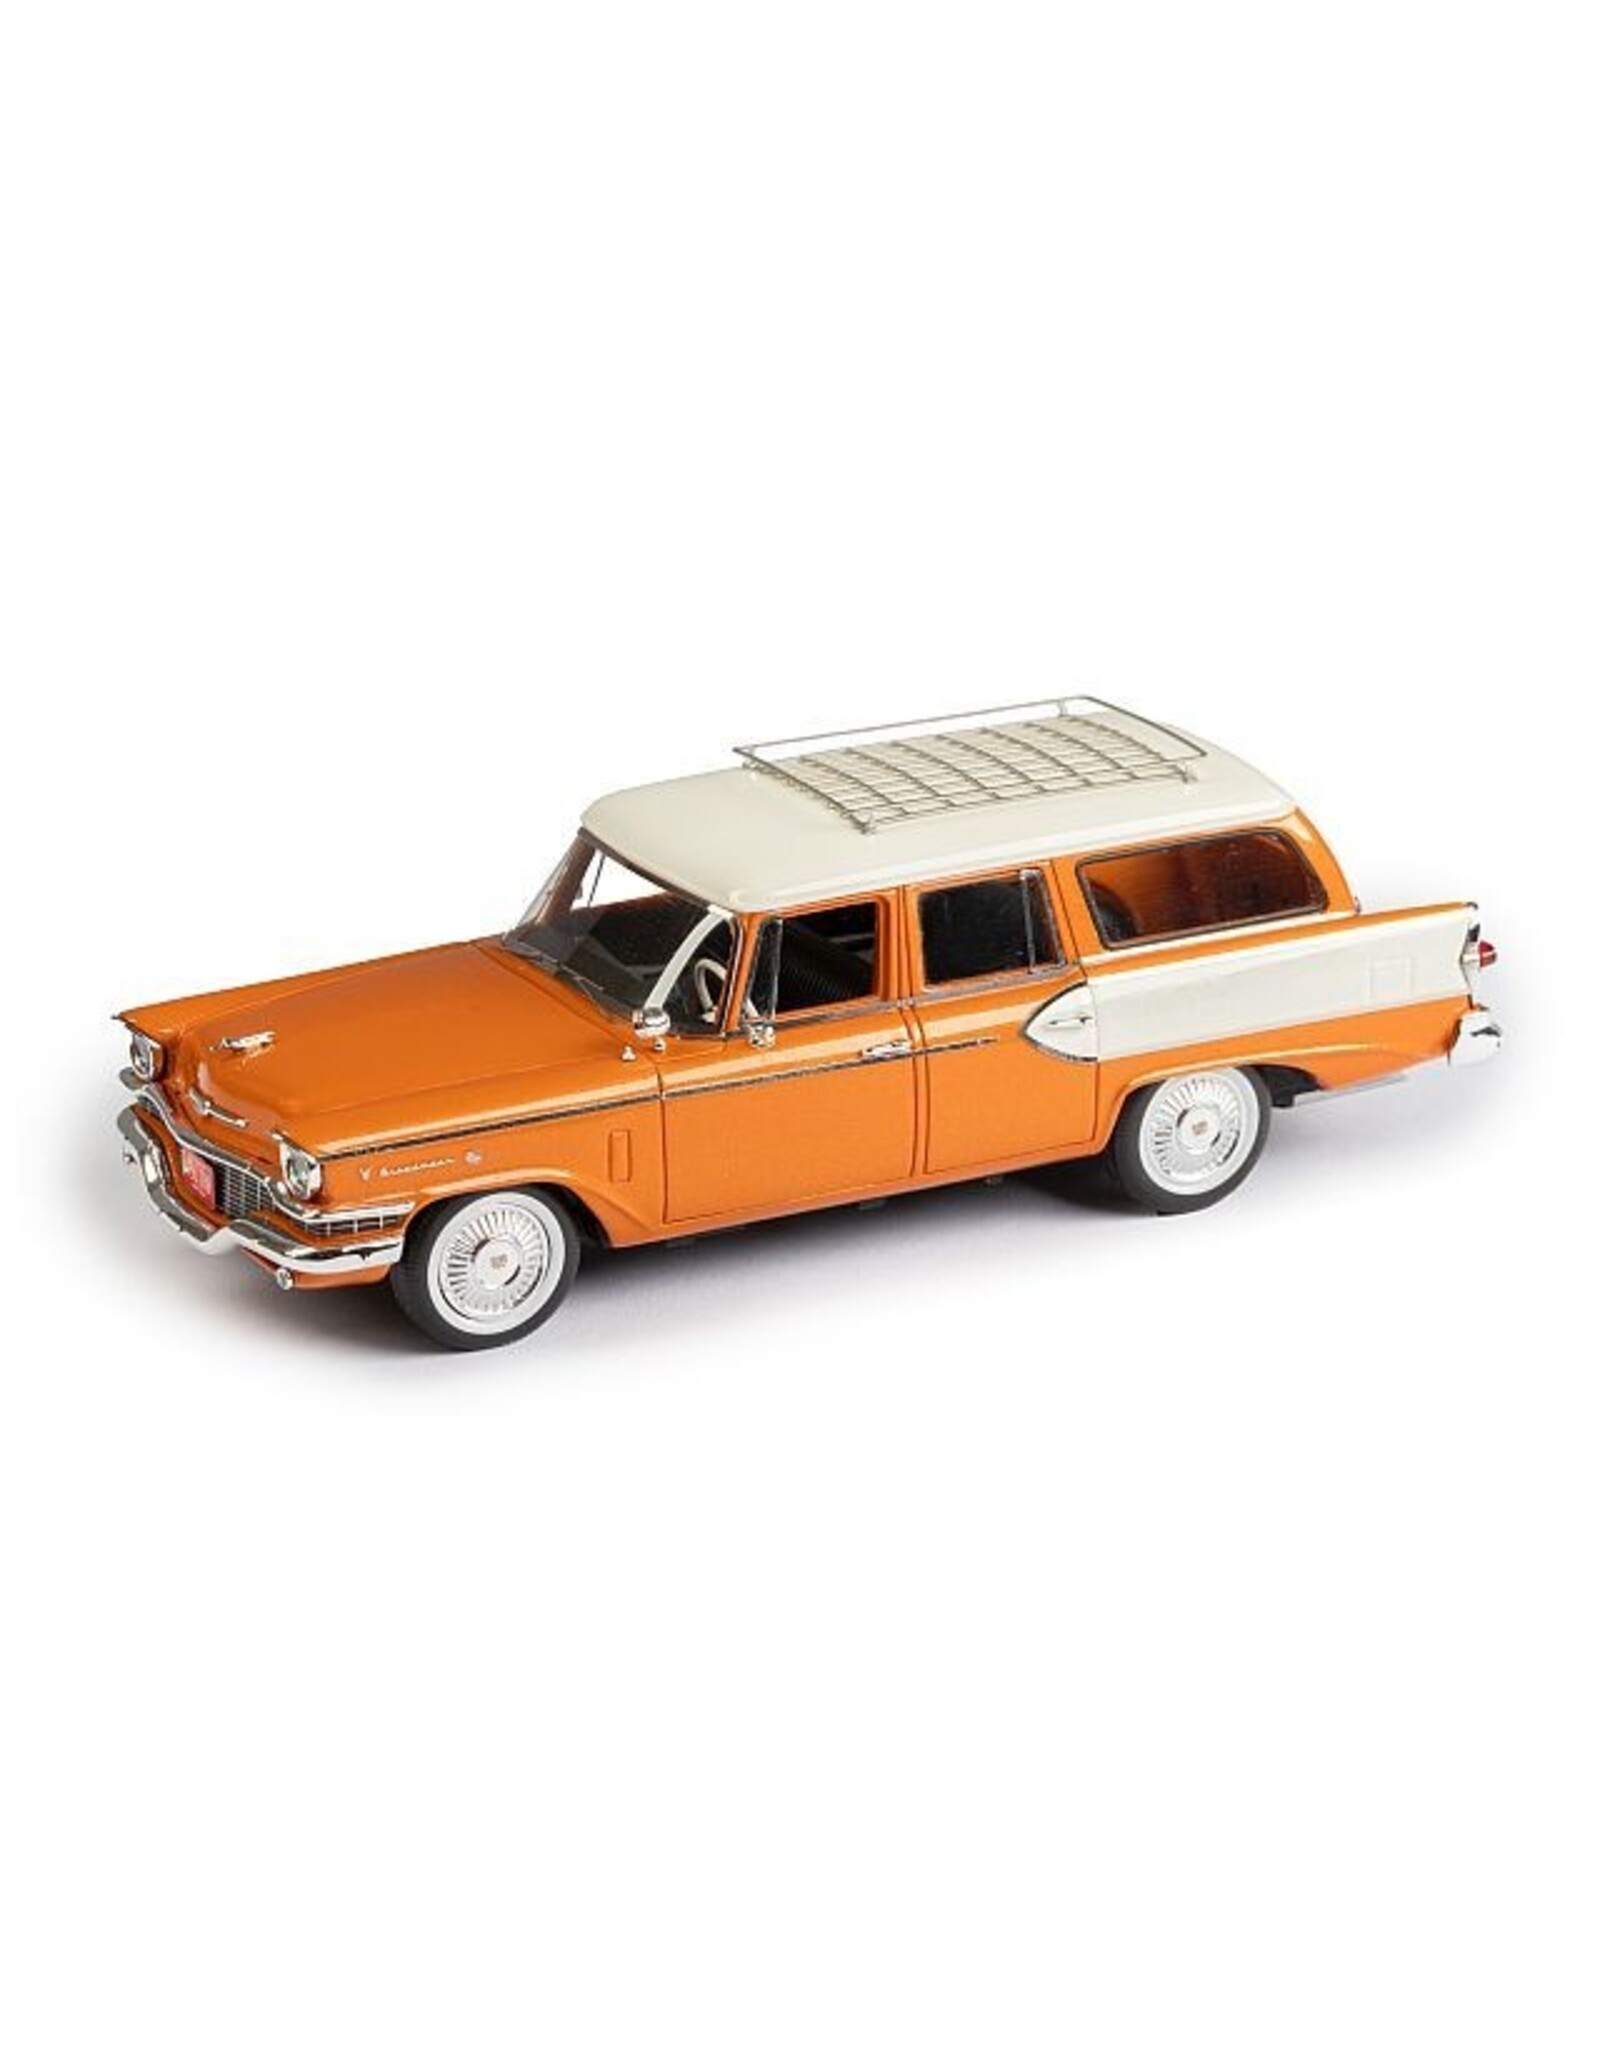 Studebaker Studebaker President Broadmoor(1957)4-door station wagon(orange/white)